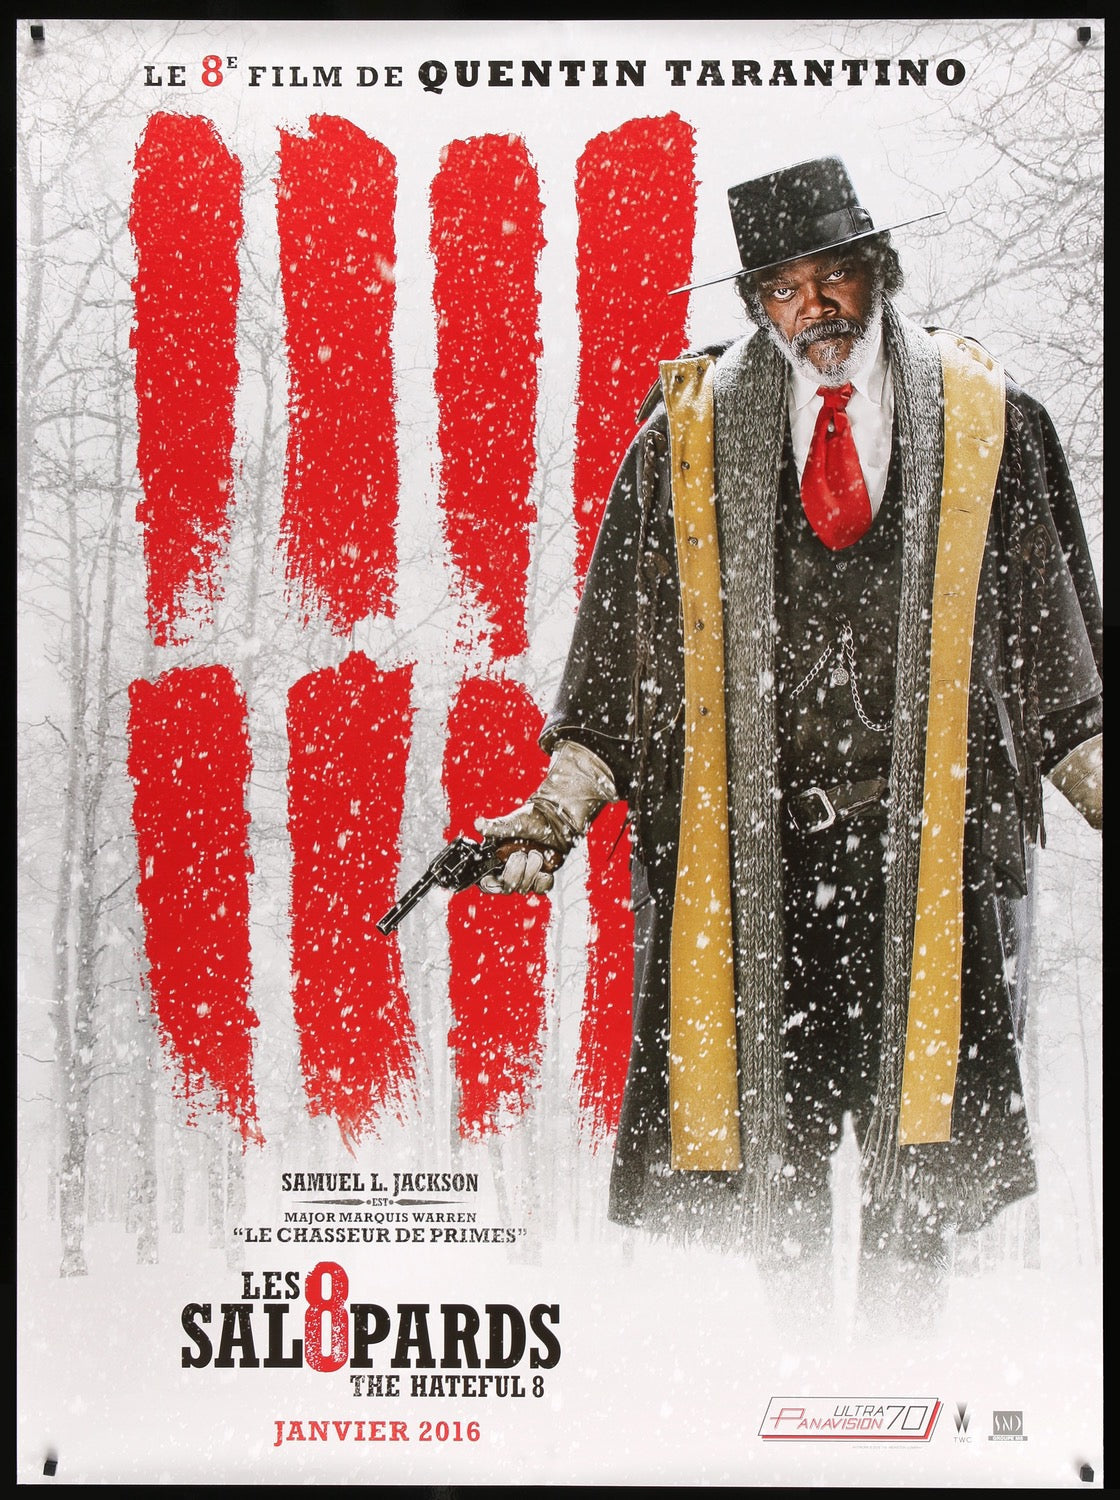 Hateful Eight (2015) original movie poster for sale at Original Film Art